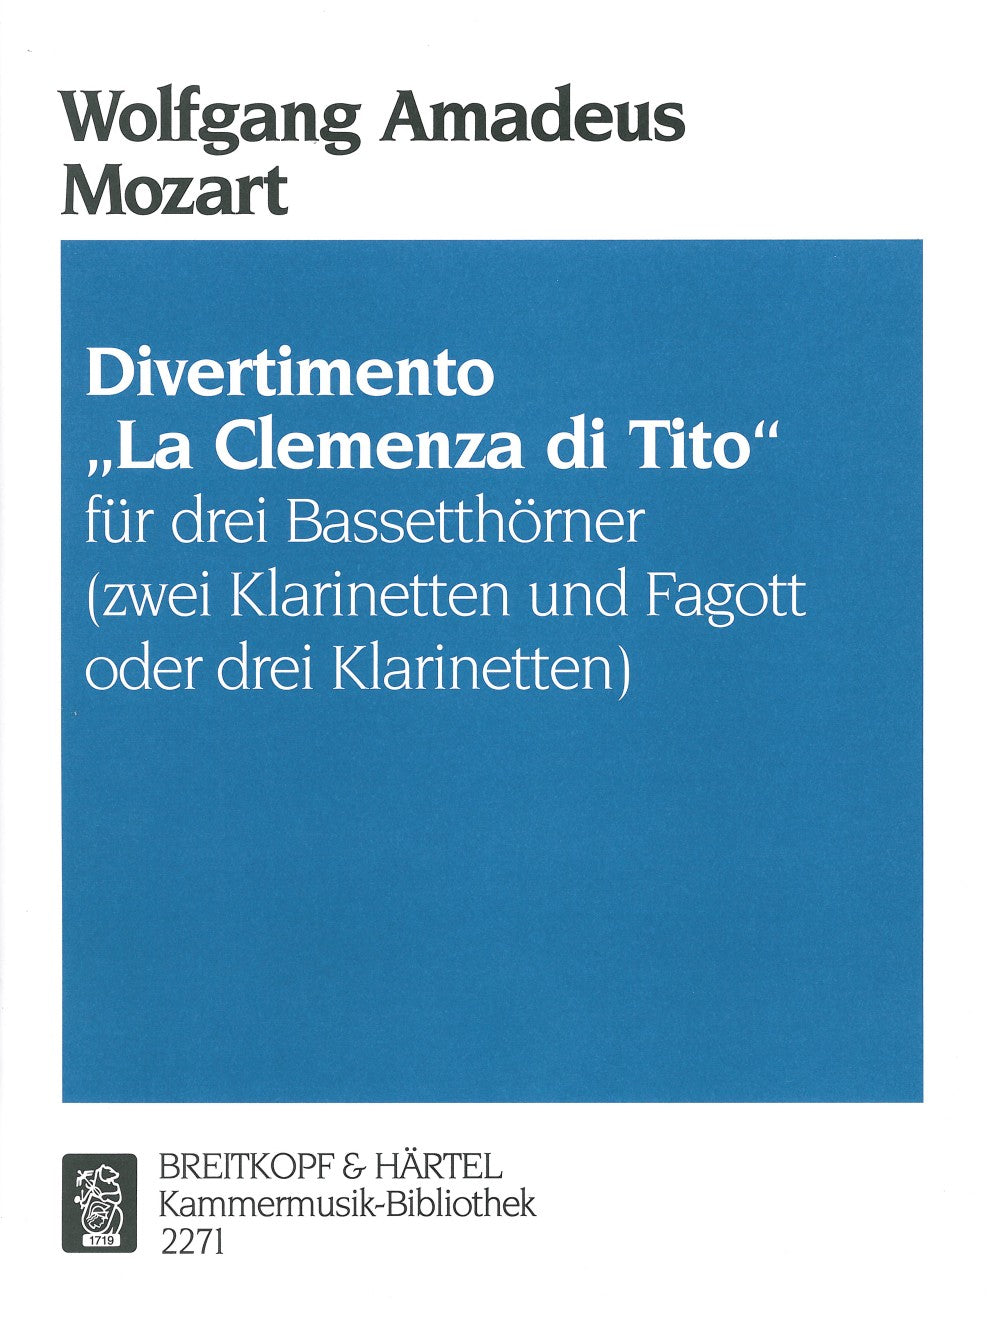 Mozart Divertimento “La clemenza di Tito”